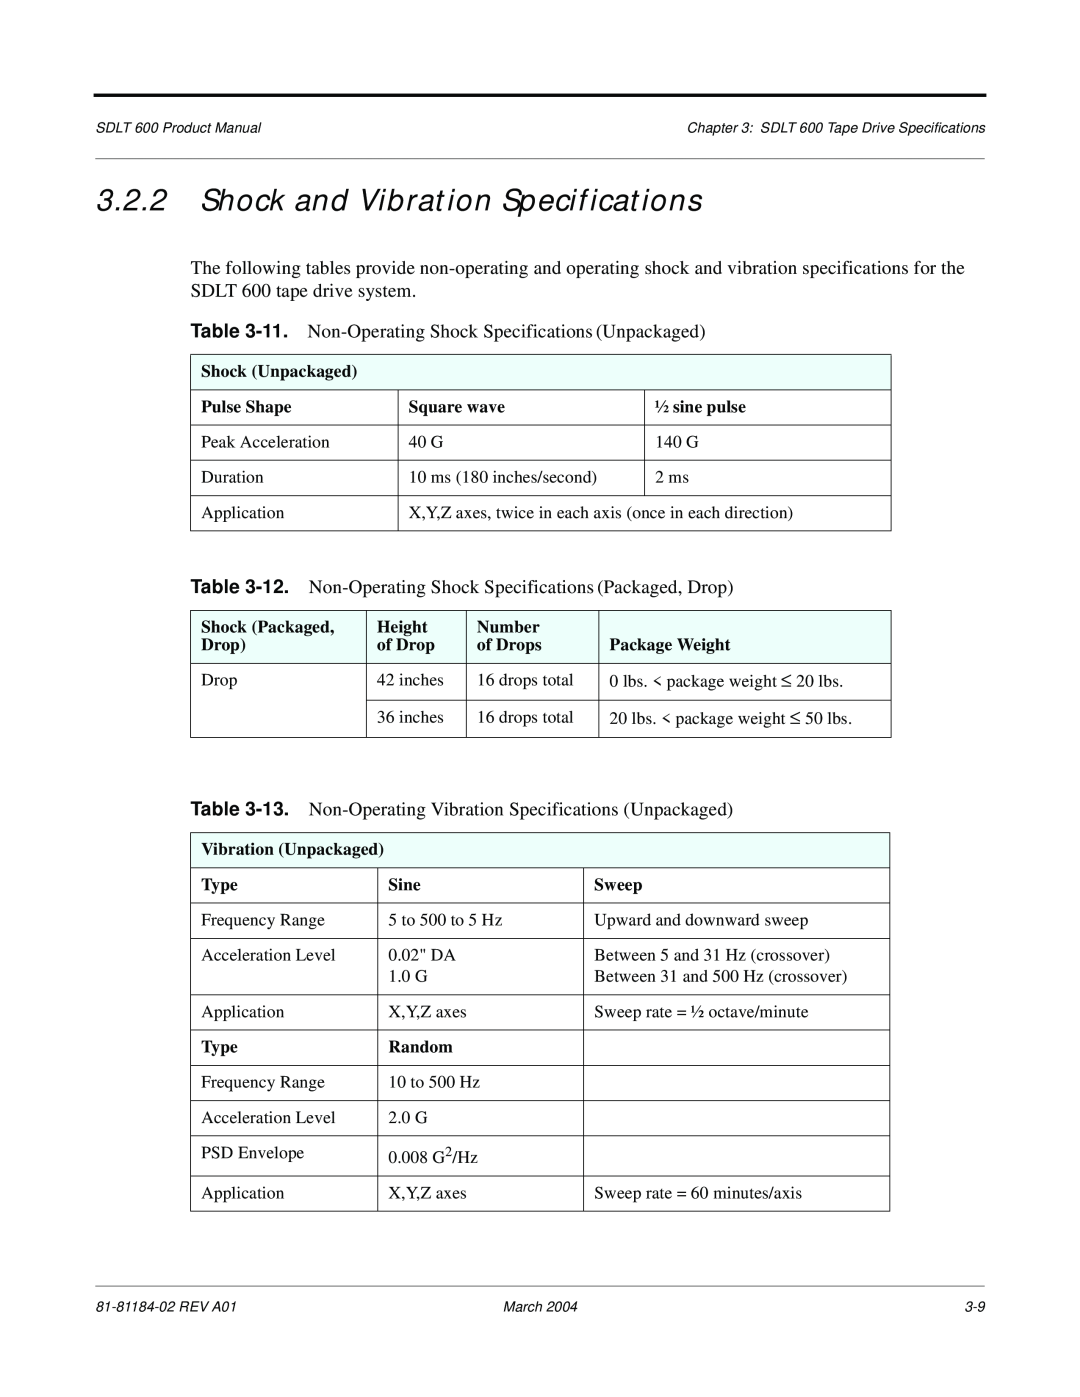 Tandberg Data 600 manual Shock and Vibration Specifications, 11. Non-Operating Shock Specifications Unpackaged 